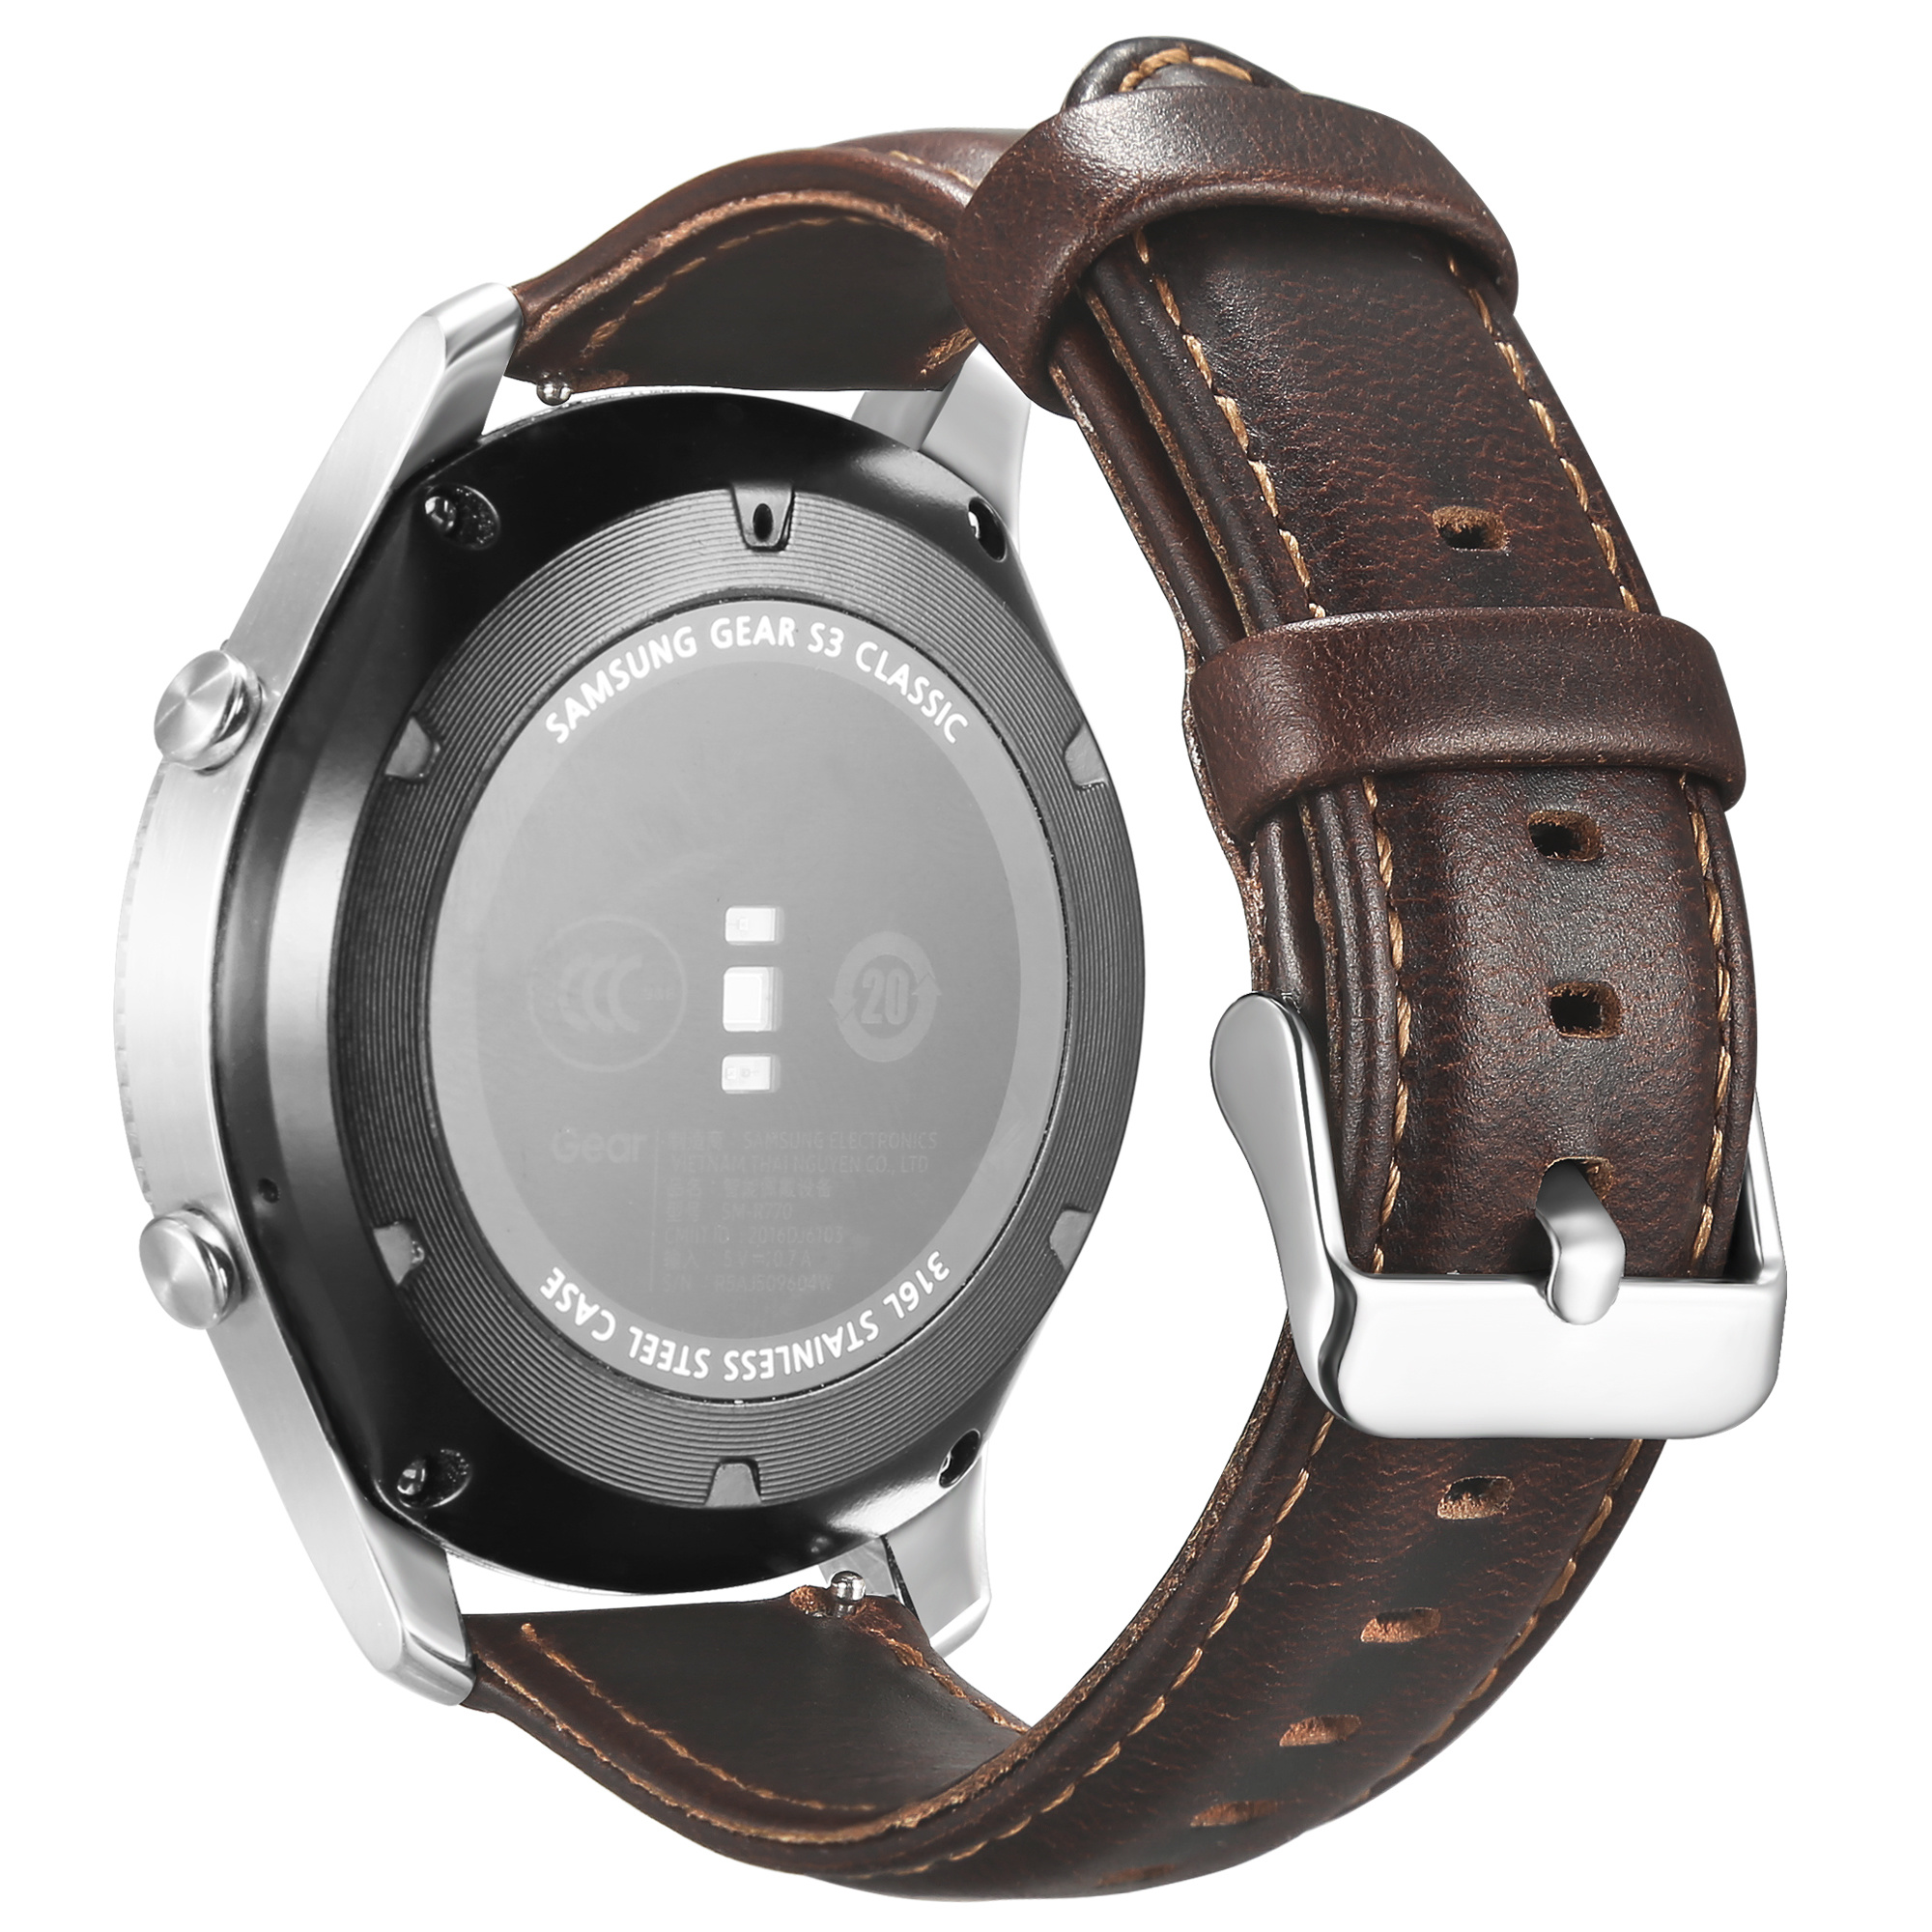 Samsung Galaxy Watch Genuine Leather Strap - Dark Brown